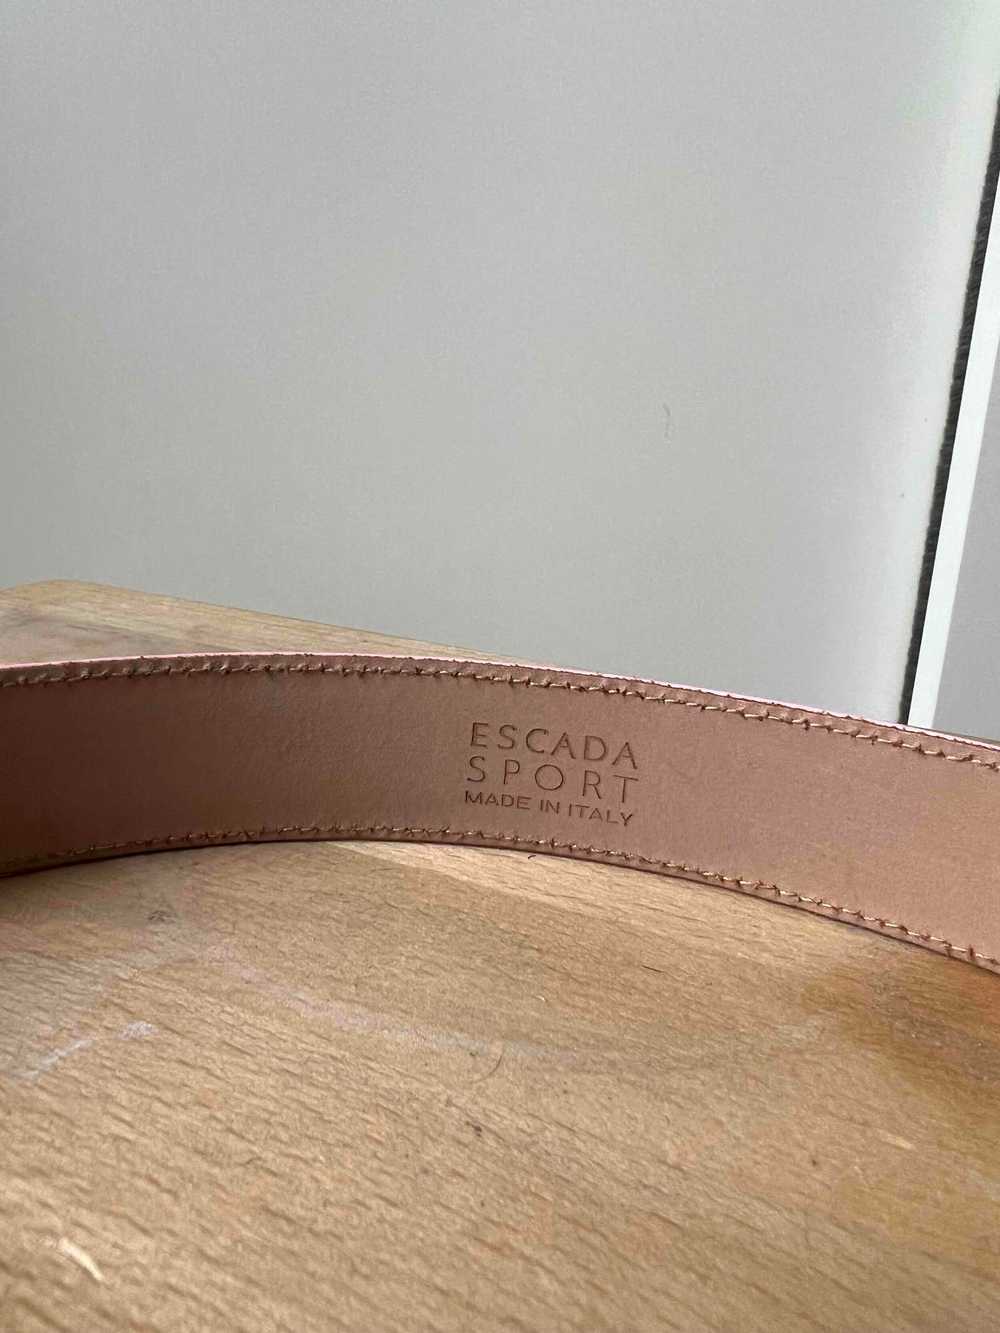 Escada leather belt - image 3